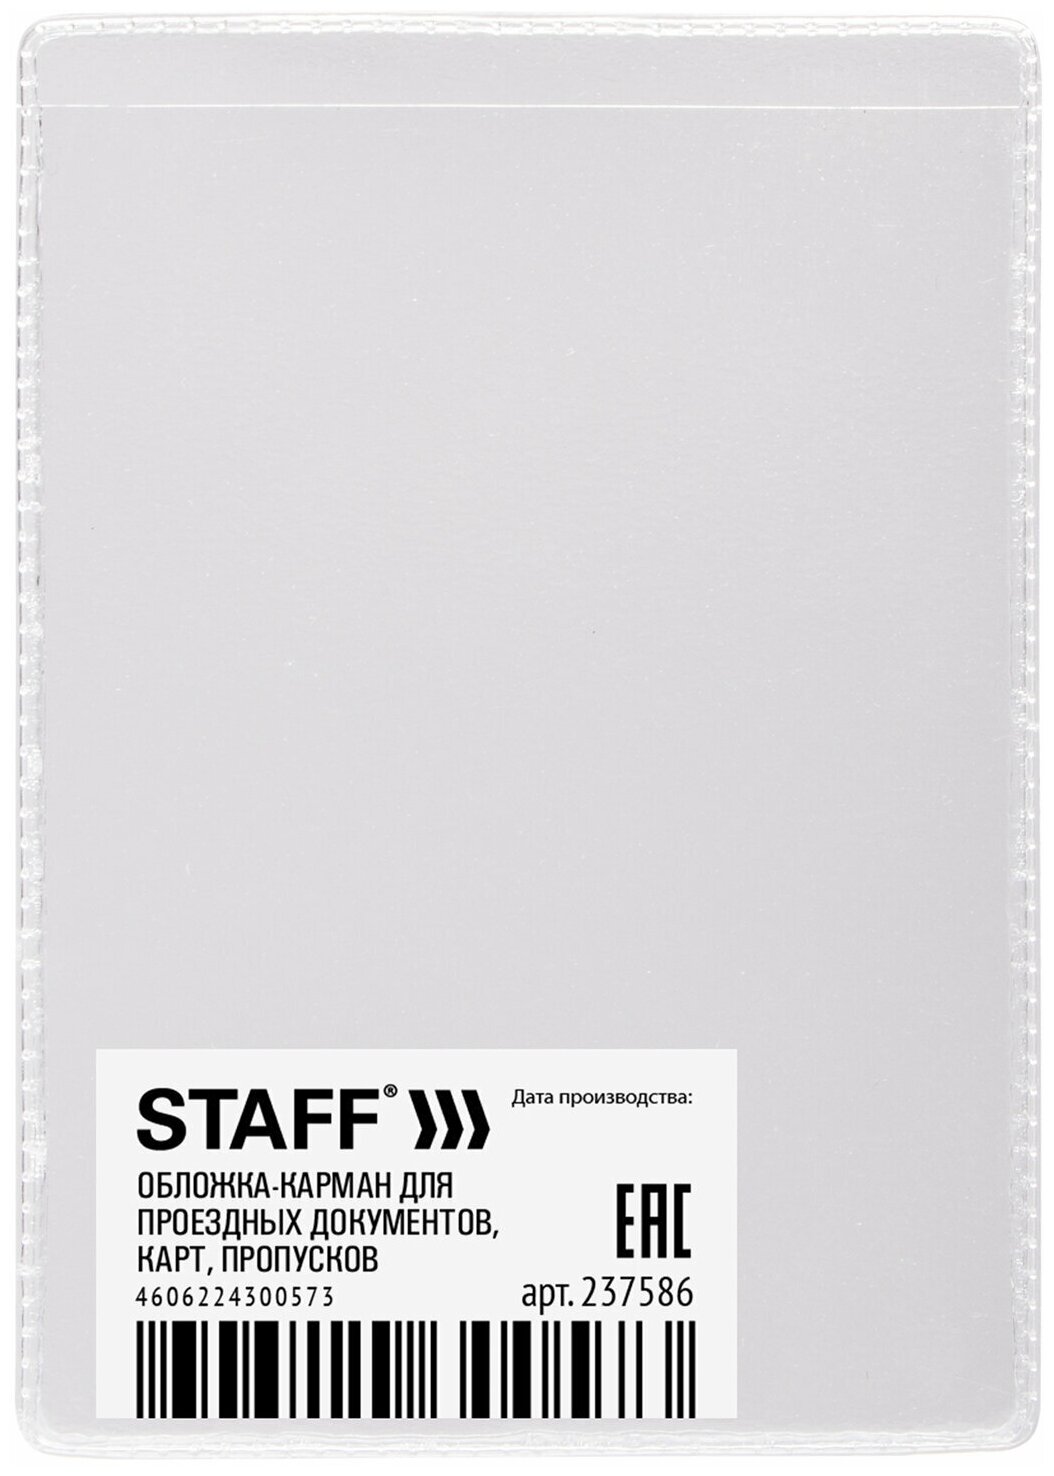 Обложка-карман для проездных документов комплект 100 шт карт пропусков 100х65 мм ПВХ прозрачная STAFF 237586